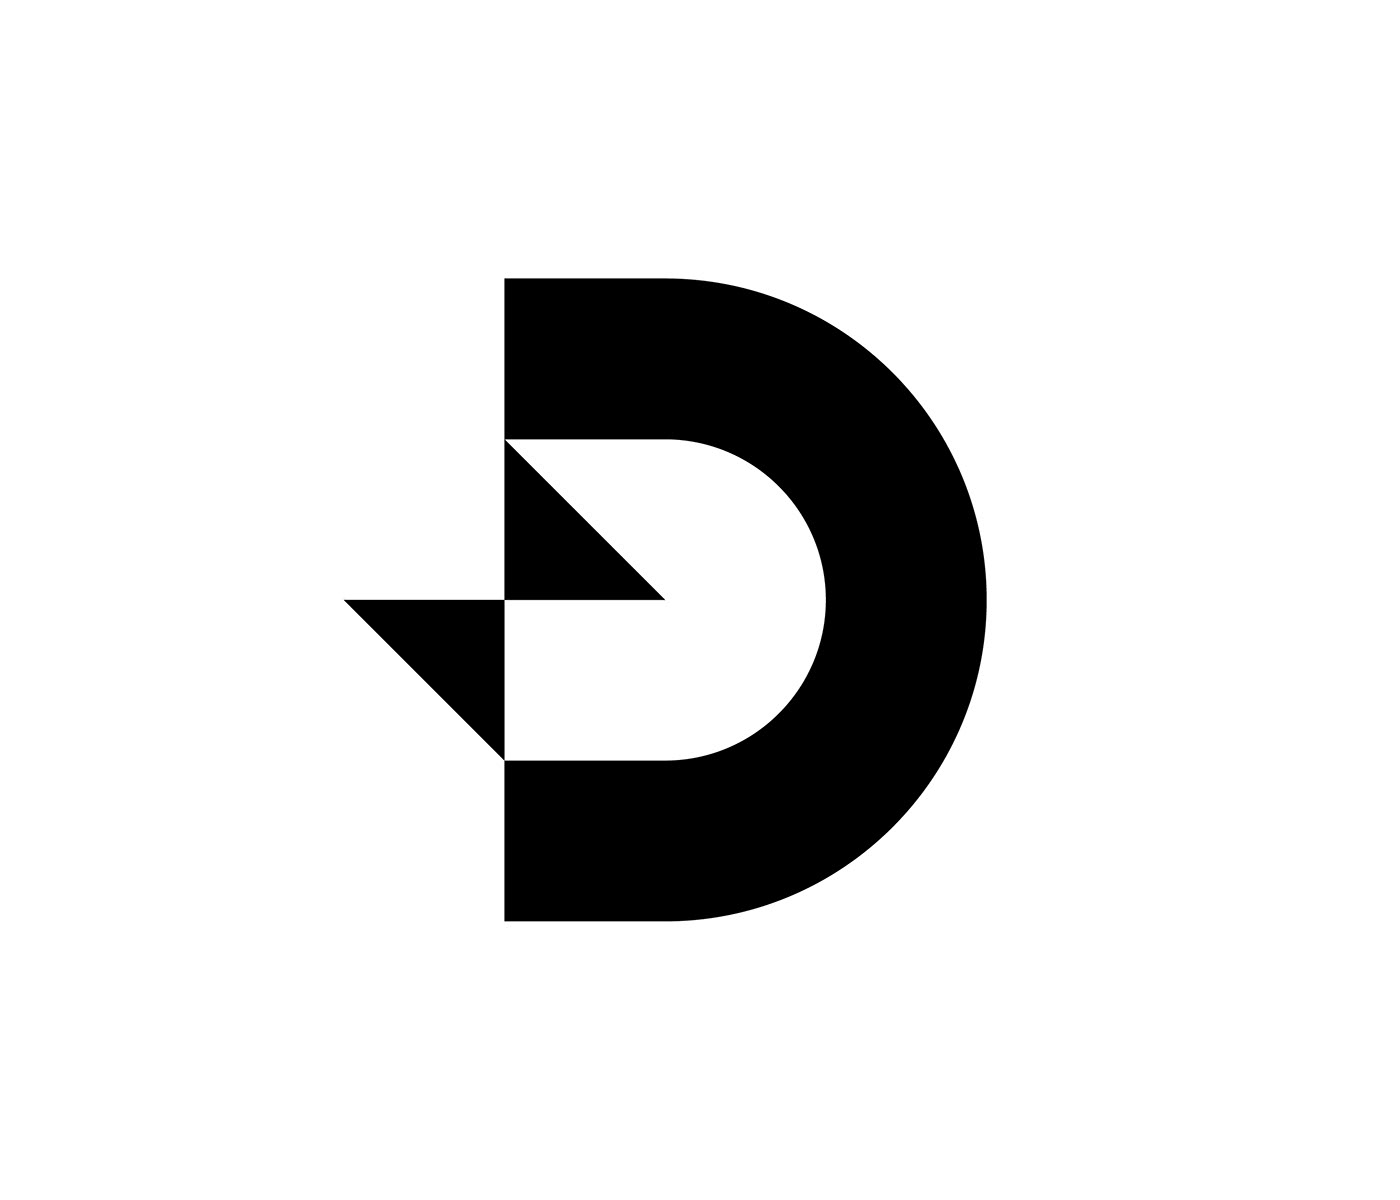 bolt d logo d mark letter letter D logo Logo Design mark monogram